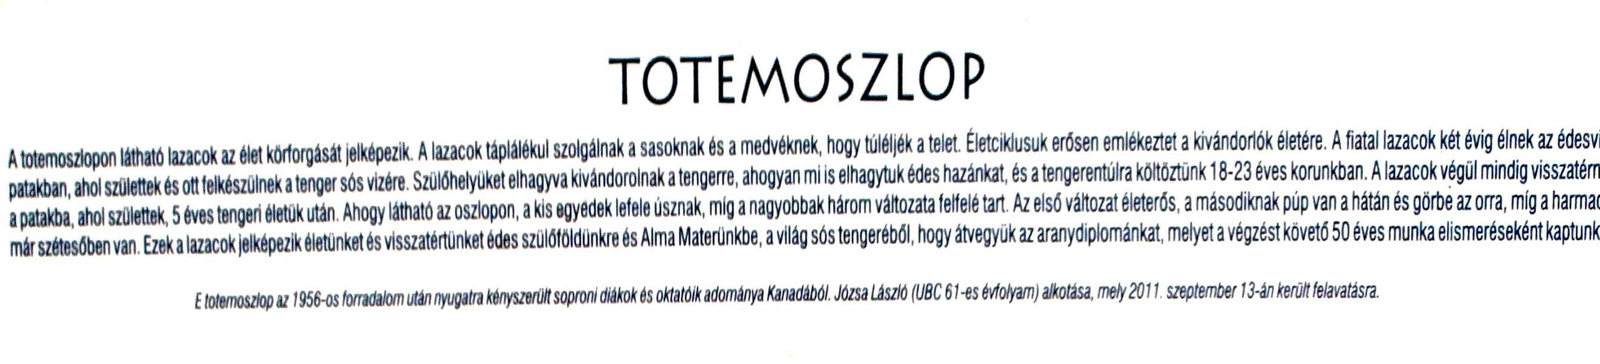 Totemoszlop magyar felirata